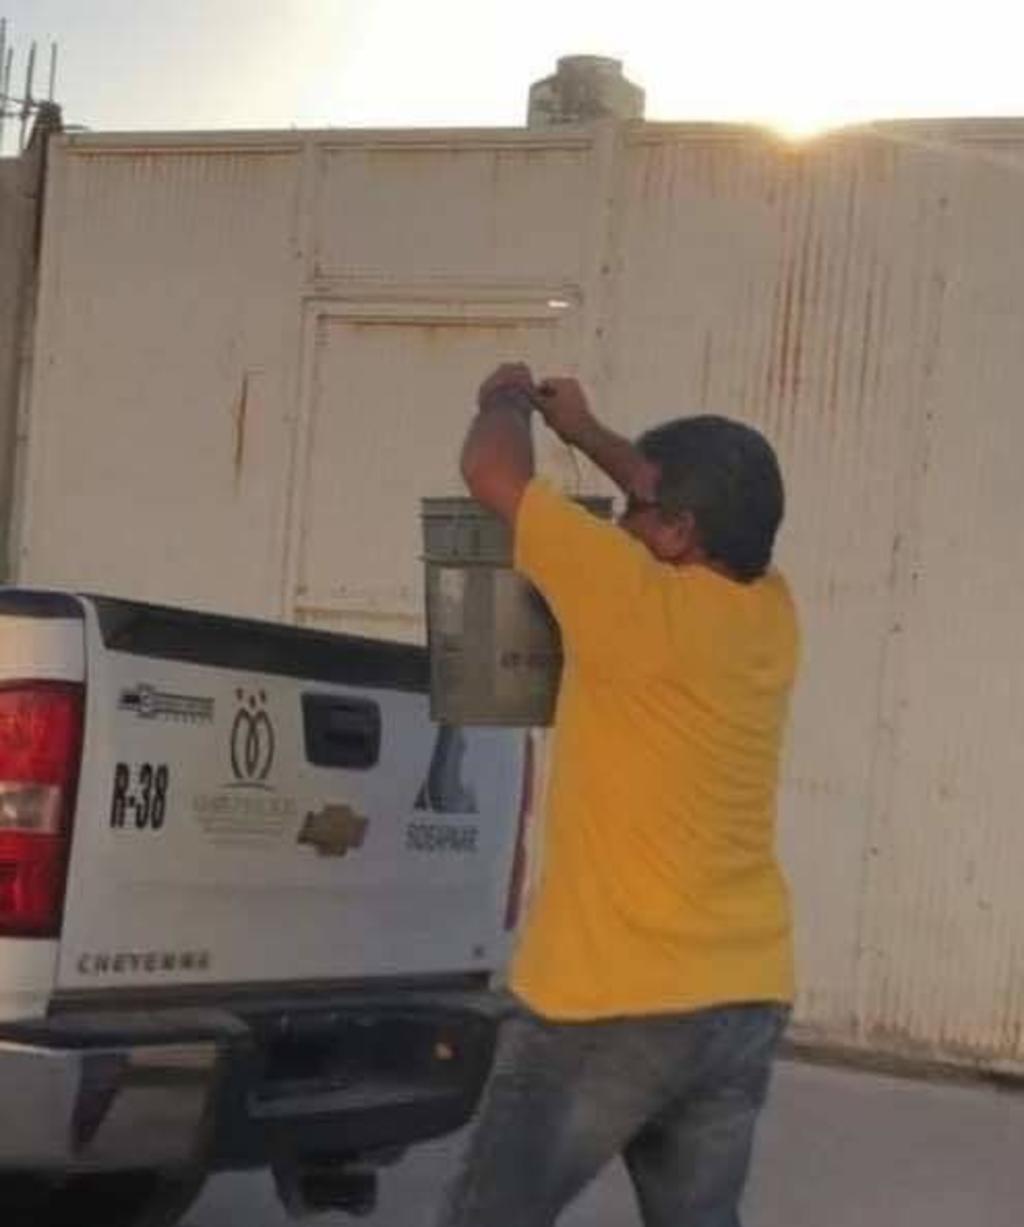 Las fotografías han sido compartidas en diversas páginas de facebook y se puede apreciar que el hombre, que viste con playera en color amarilla y pantalón de mezclilla, trae algunas botellas de cerveza mejor conocidas como 'caguamas'.
(EL SIGLO DE TORREÓN)